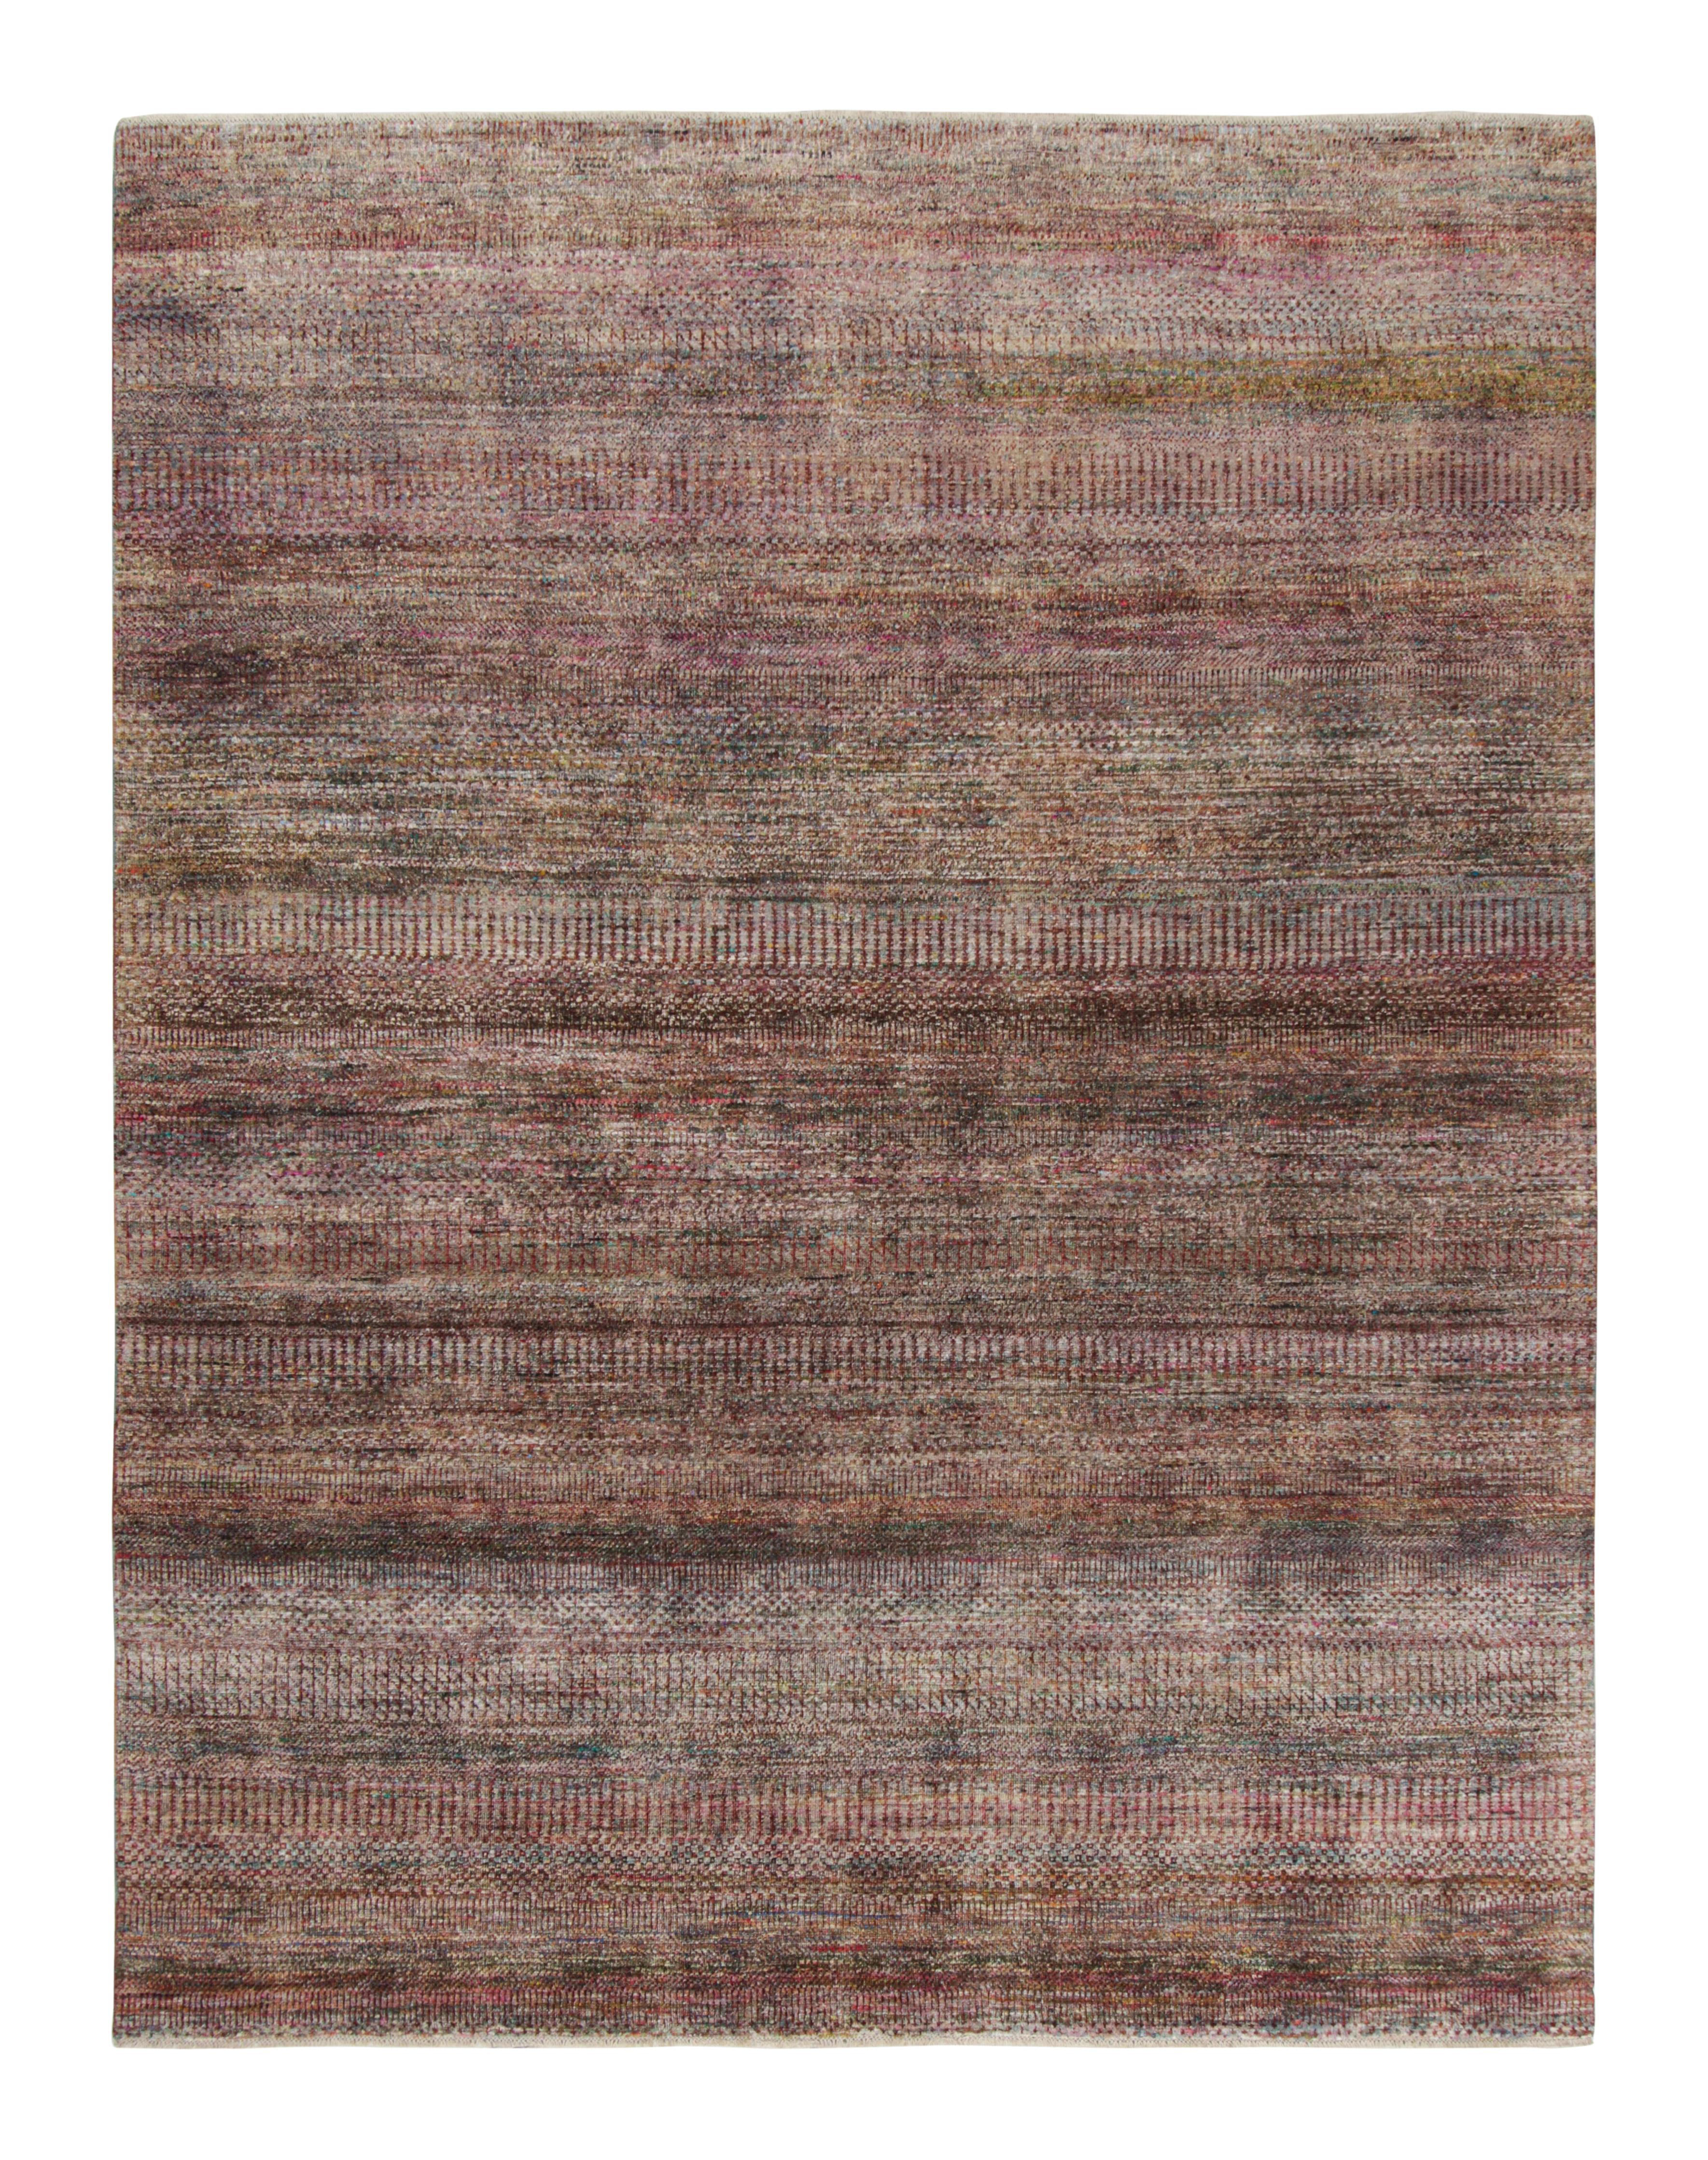 Ce tapis texturé 8x10 est un nouvel ajout à la collection Texture of Color de Rug & Kilim. Il est fait de soie nouée à la main et reprend le thème de cette collection, en particulier une teinture végétale comme celles utilisées dans les tapis